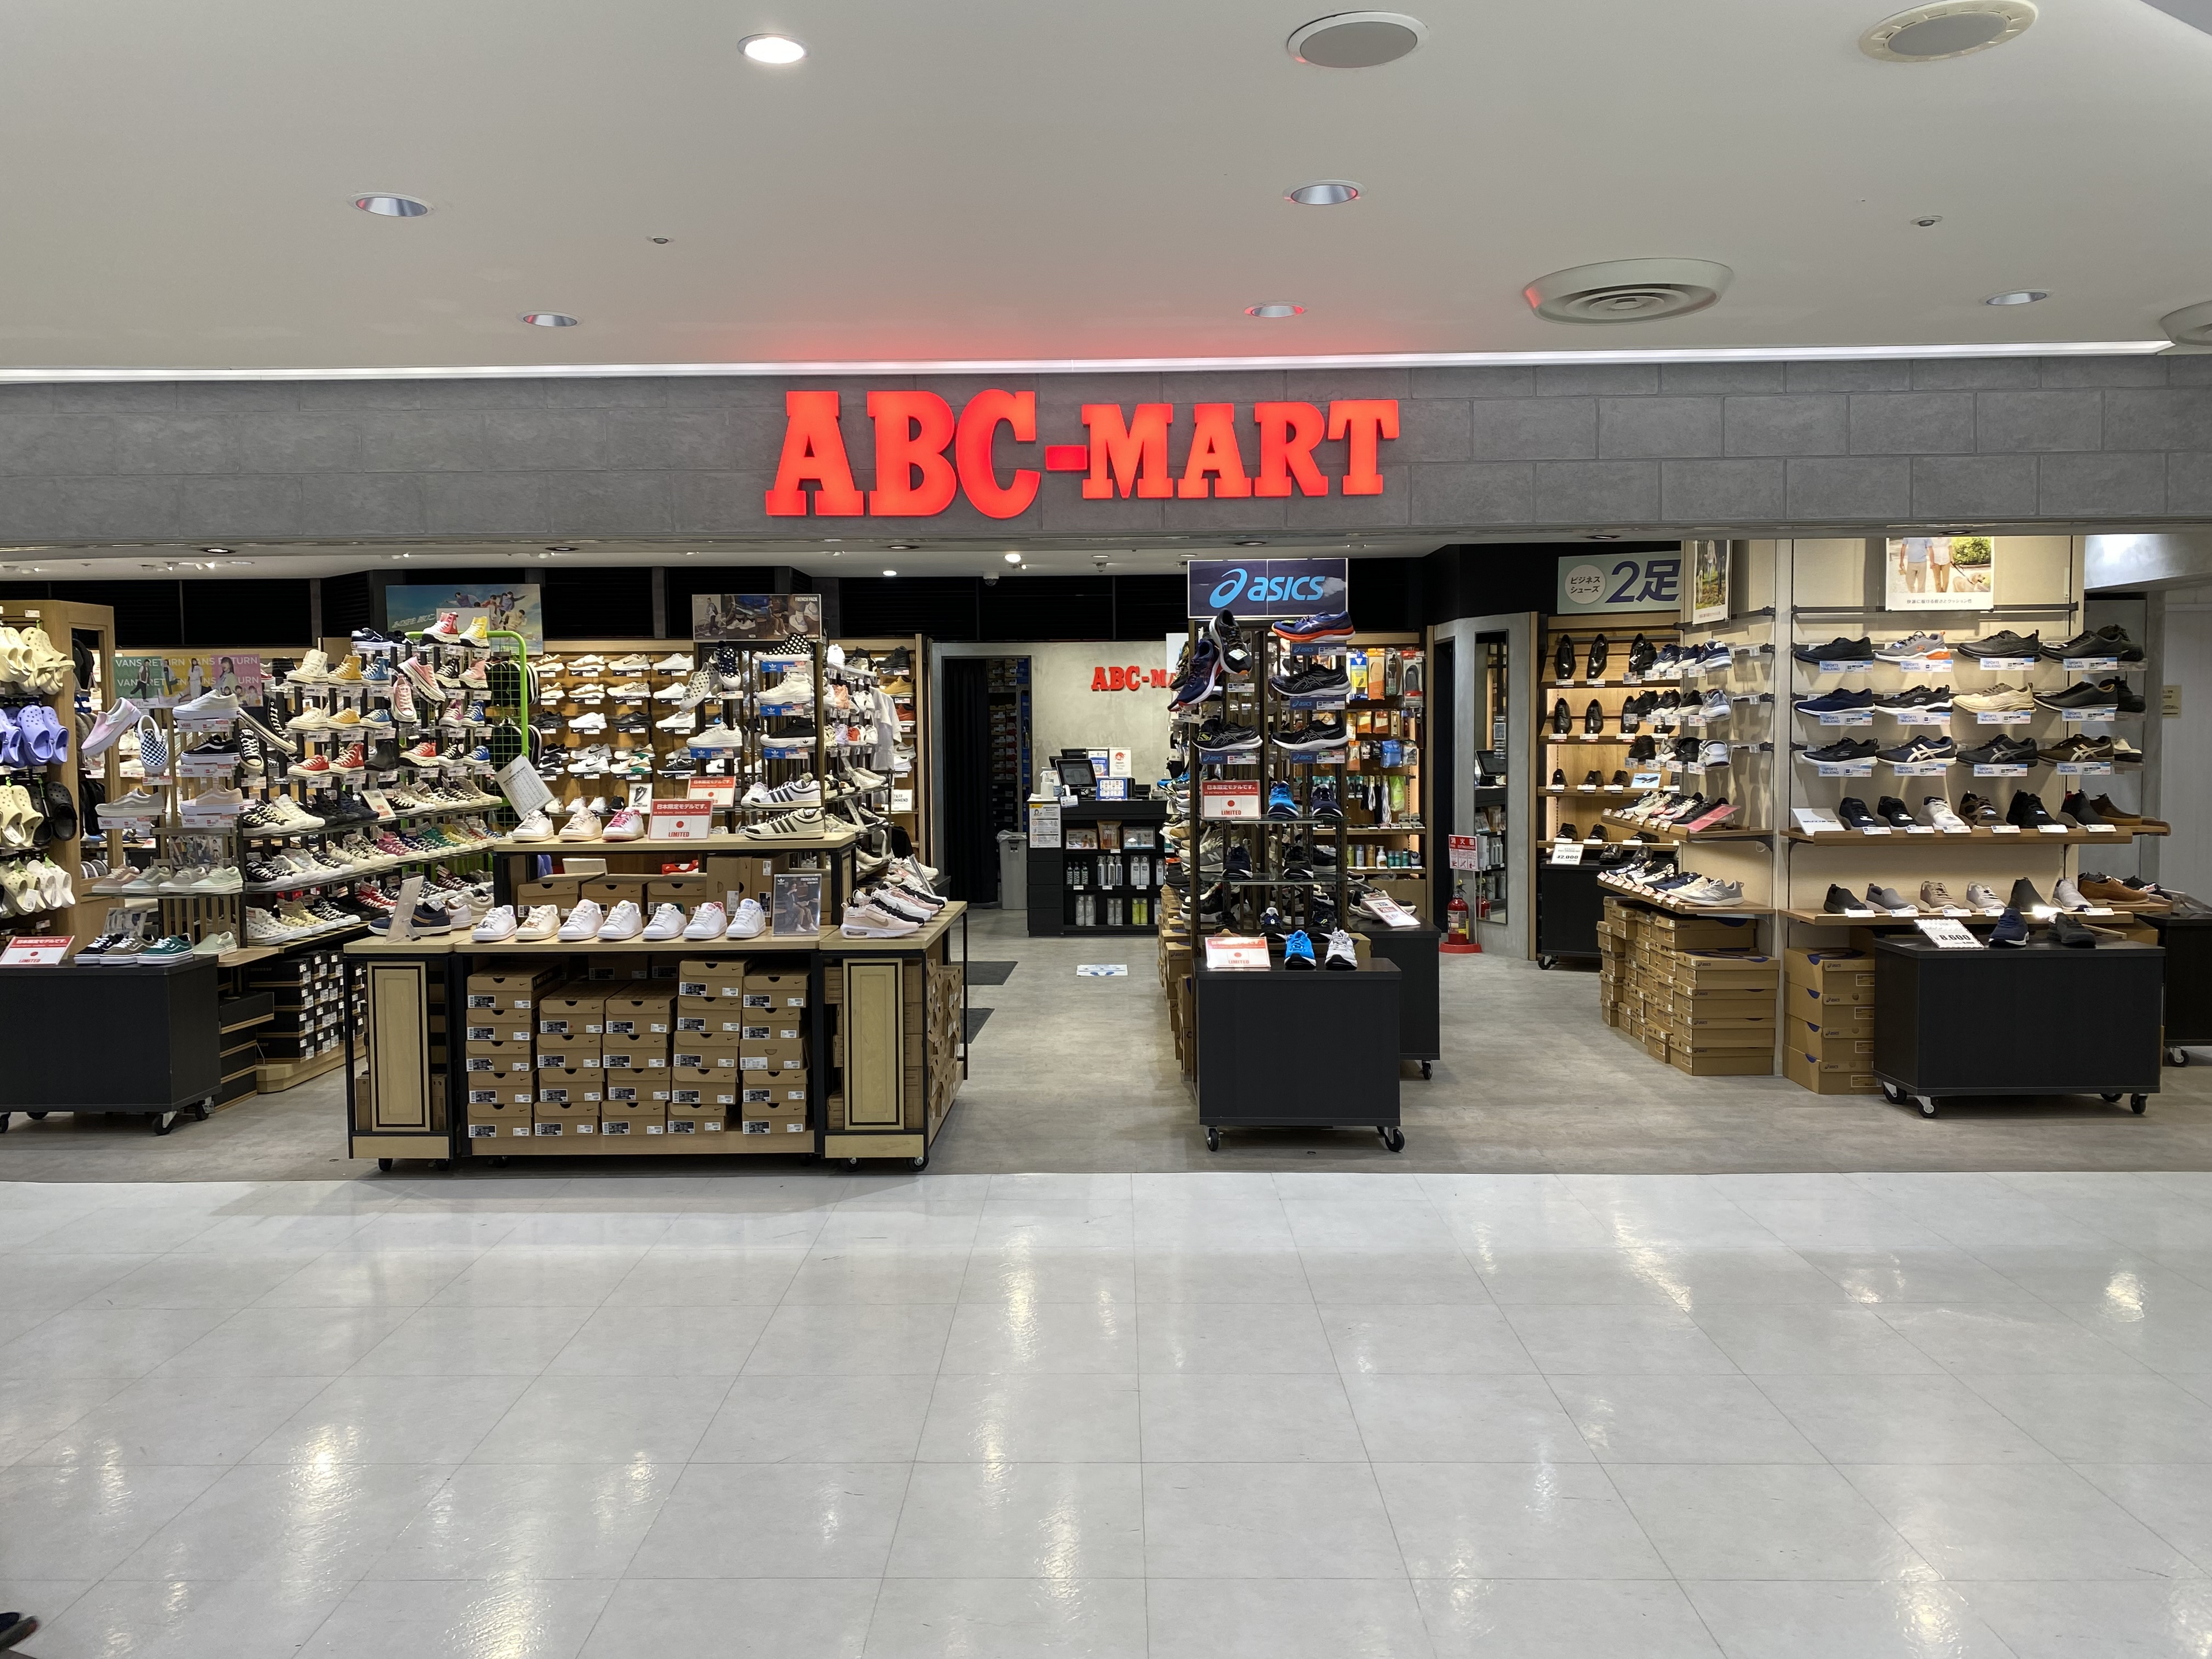 ABC-MART成田機場第1航廈店的店鋪外觀照片